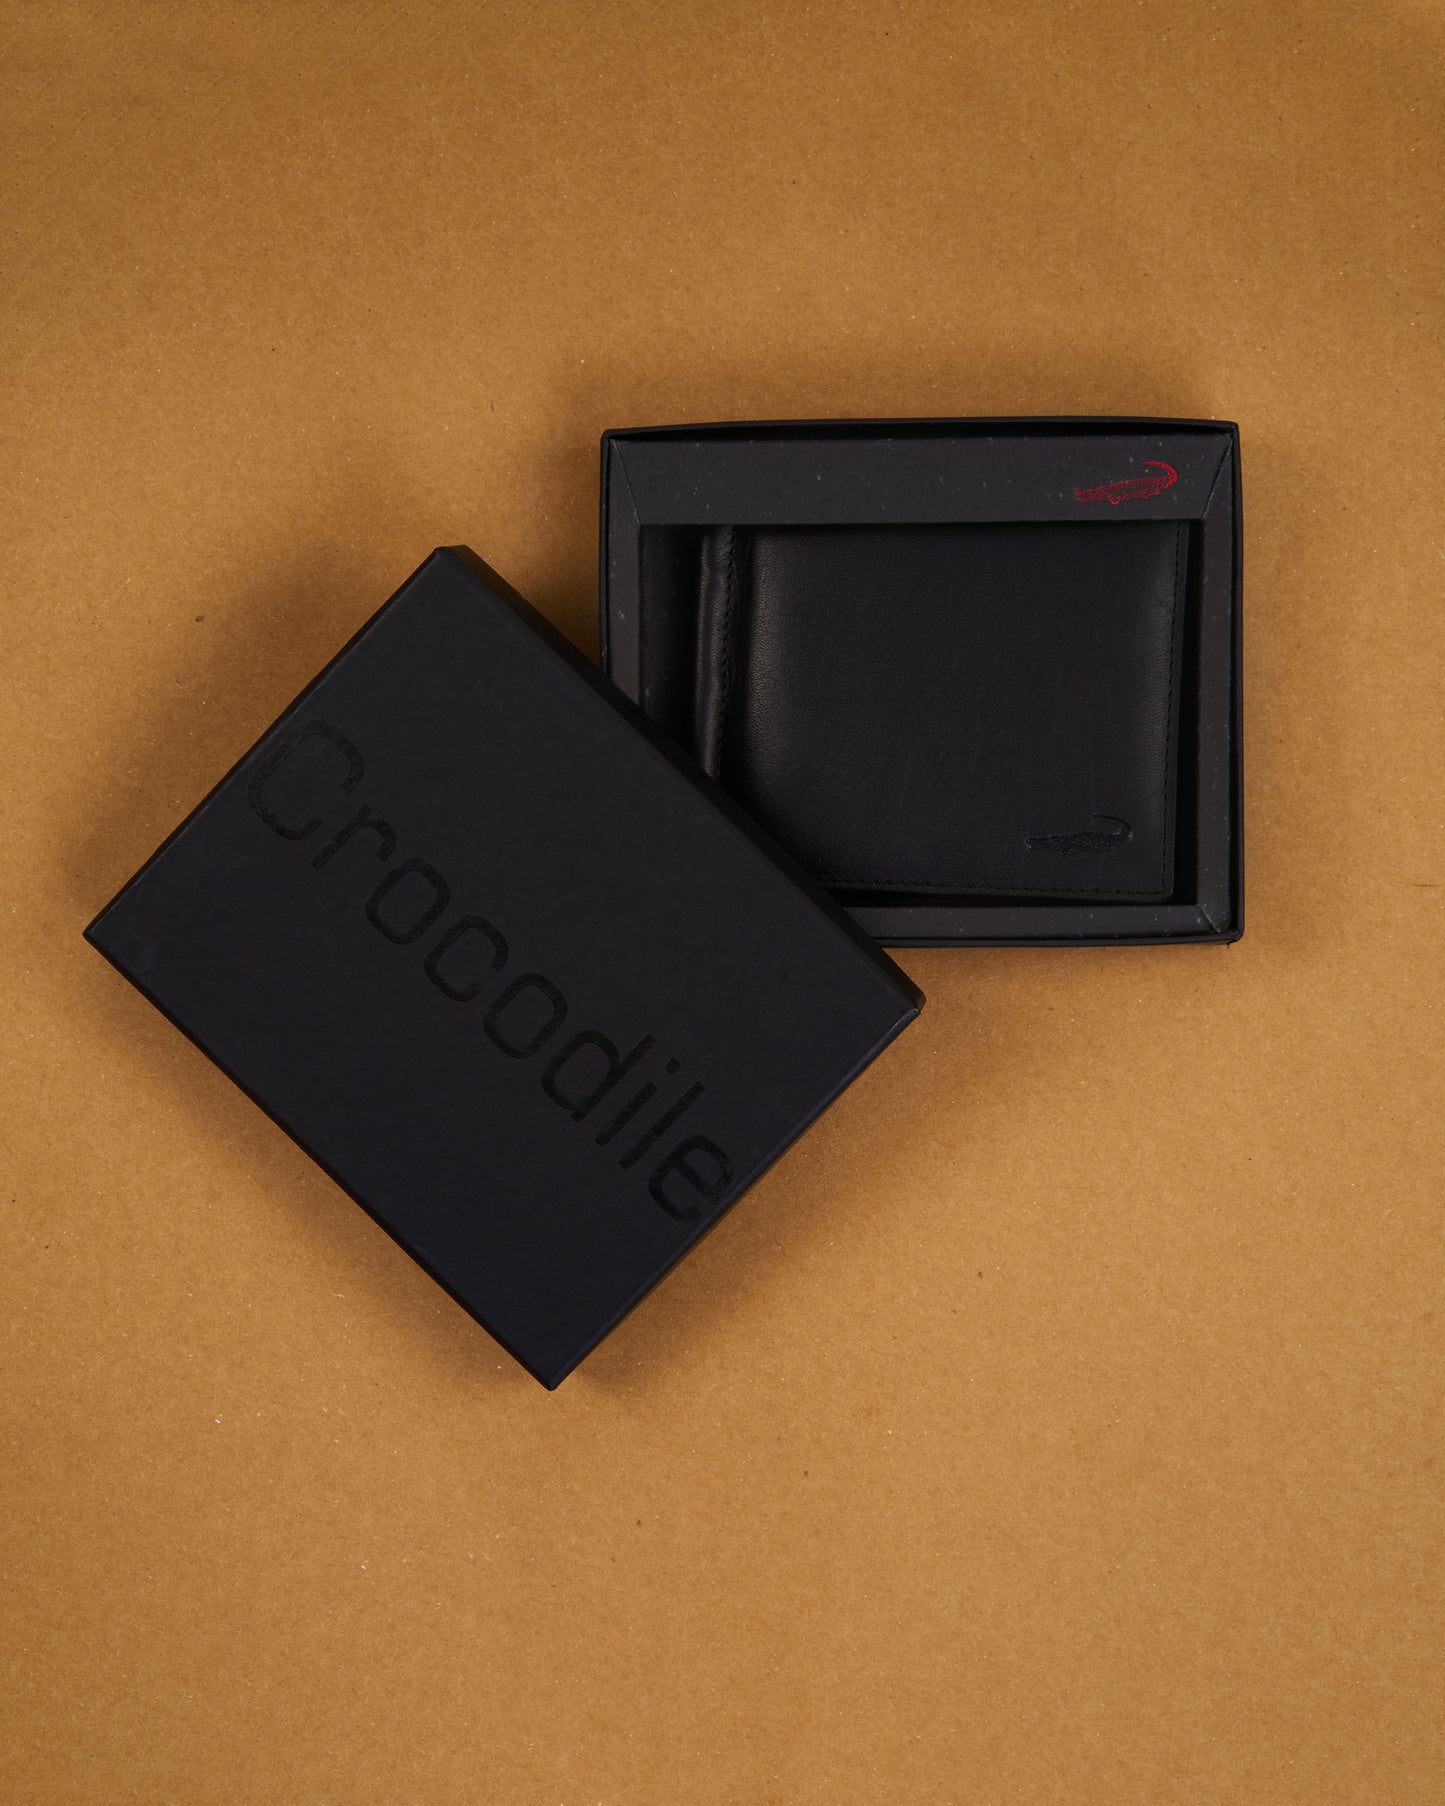 Bifold Leather Card Holder - Black